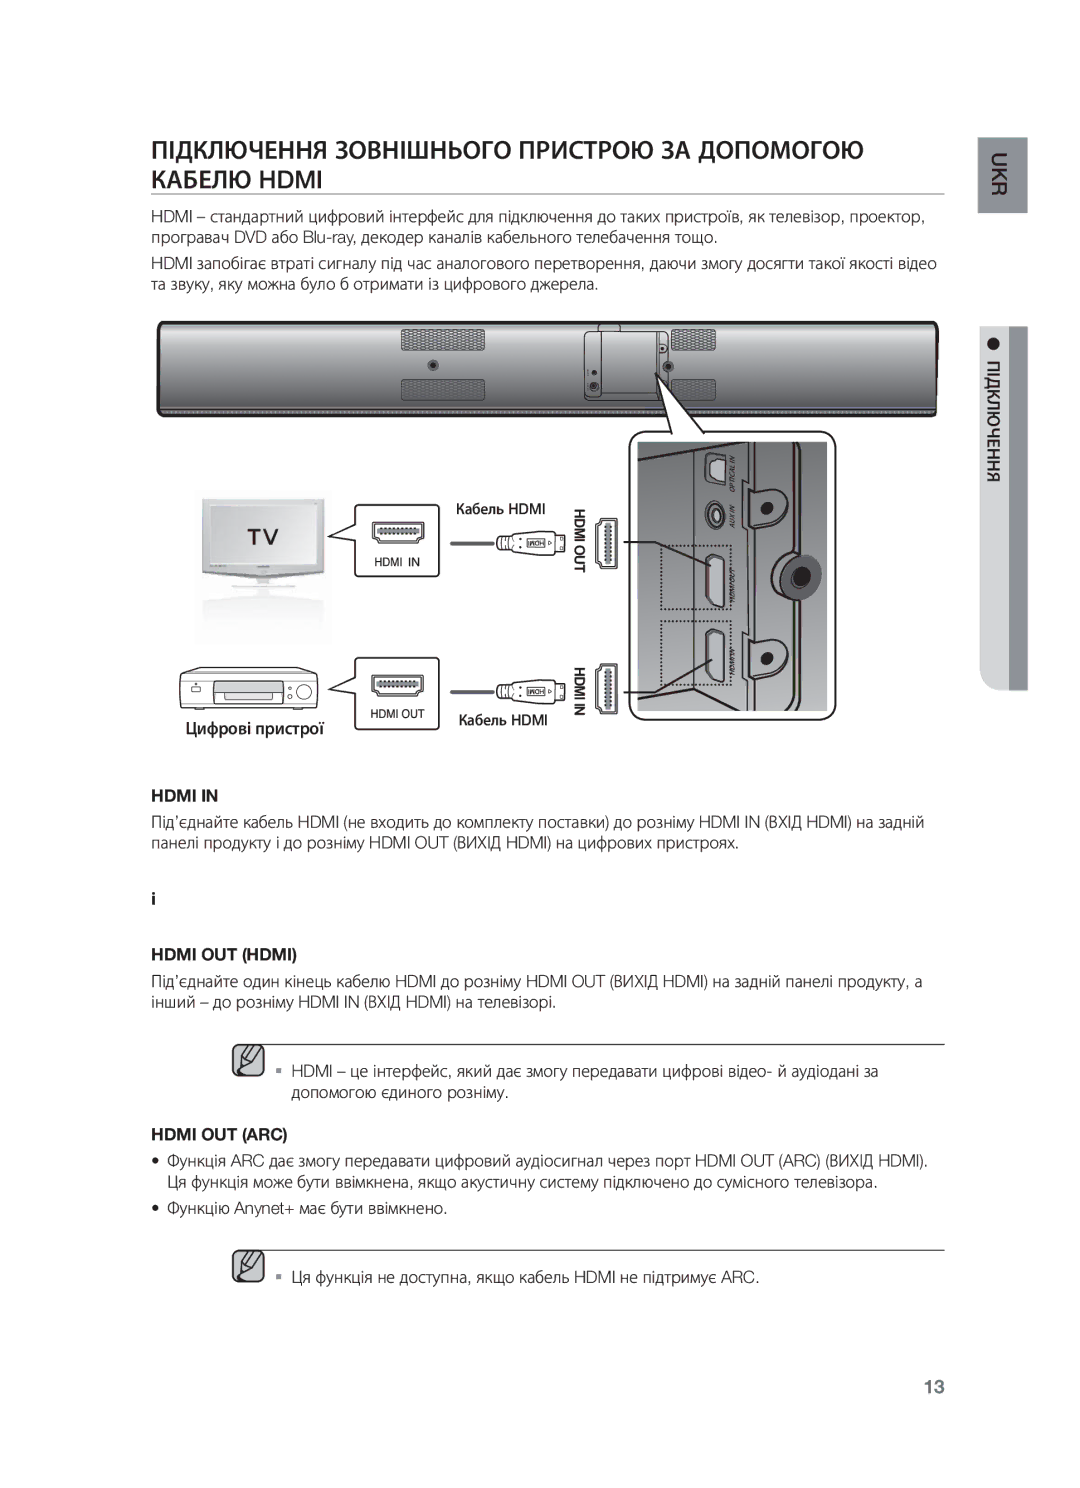 Samsung HW-F750/RU Підключення Зовнішнього Пристрою ЗА Допомогою Кабелю Hdmi, Цифрові пристрої Кабель Hdmi, Hdmi OUT Hdmi 